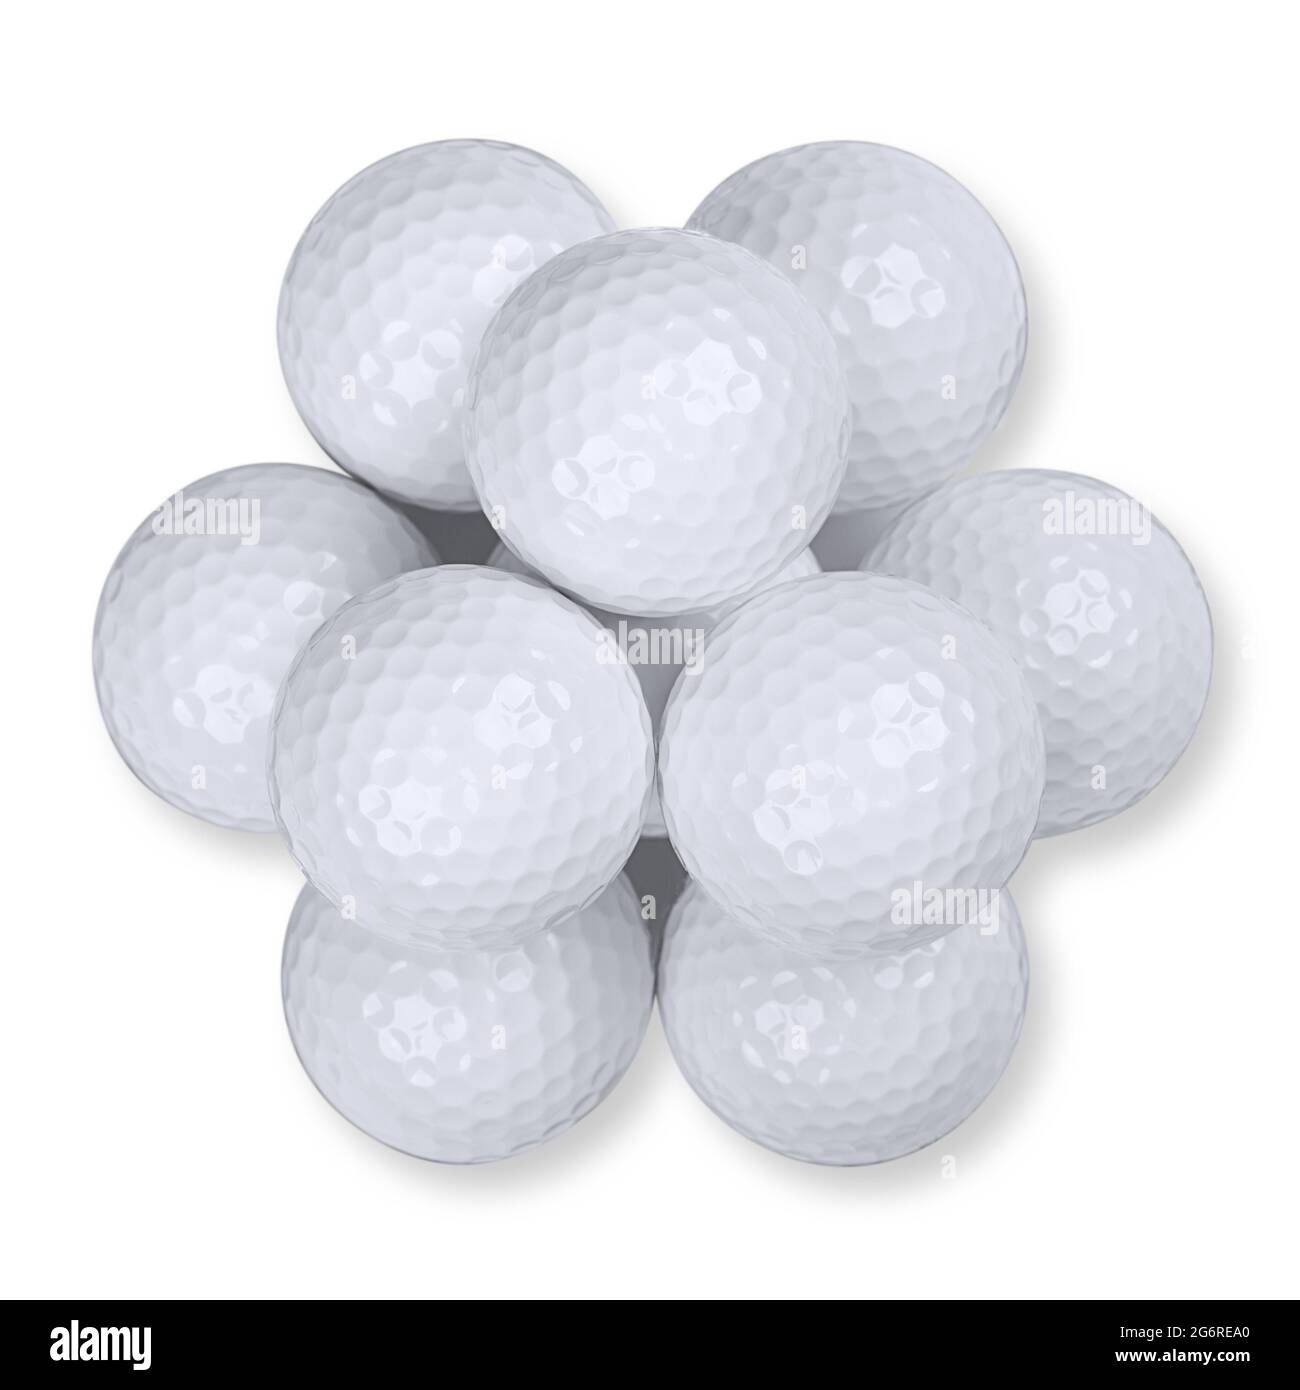 Balles de golf empilées en forme de pyramide, du dessus, sur fond blanc. Un tas de dix balles de golf américaines blanches avec des encoches spéciales. Banque D'Images